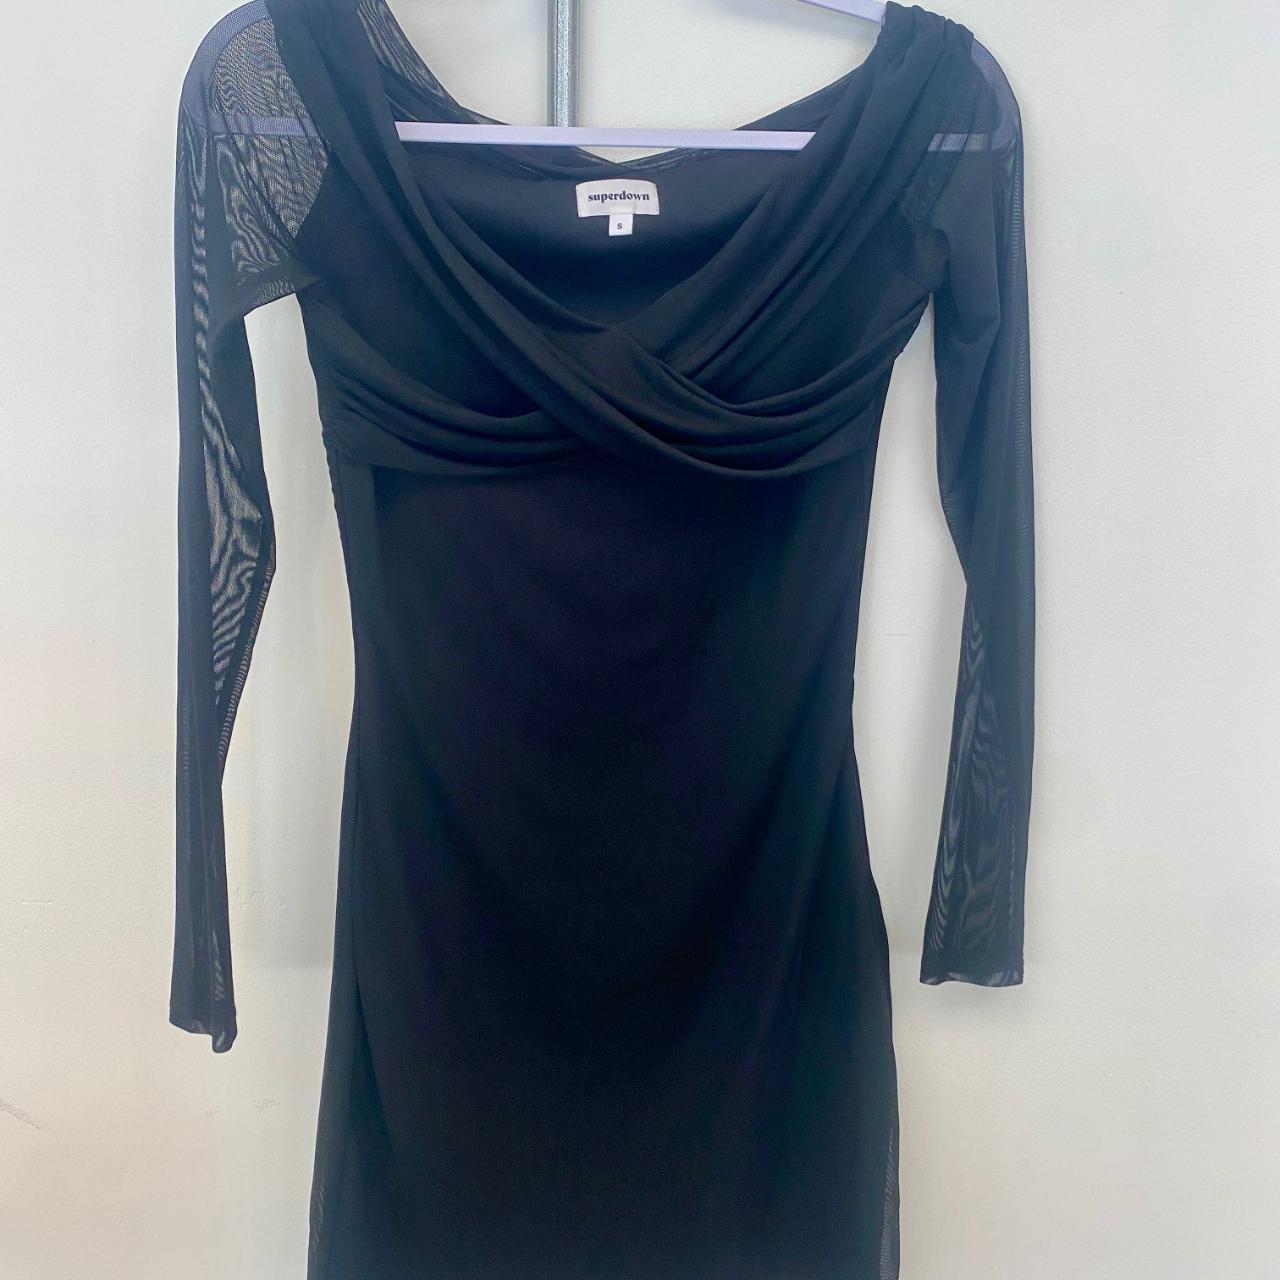 black dress with mesh sleeves - Depop